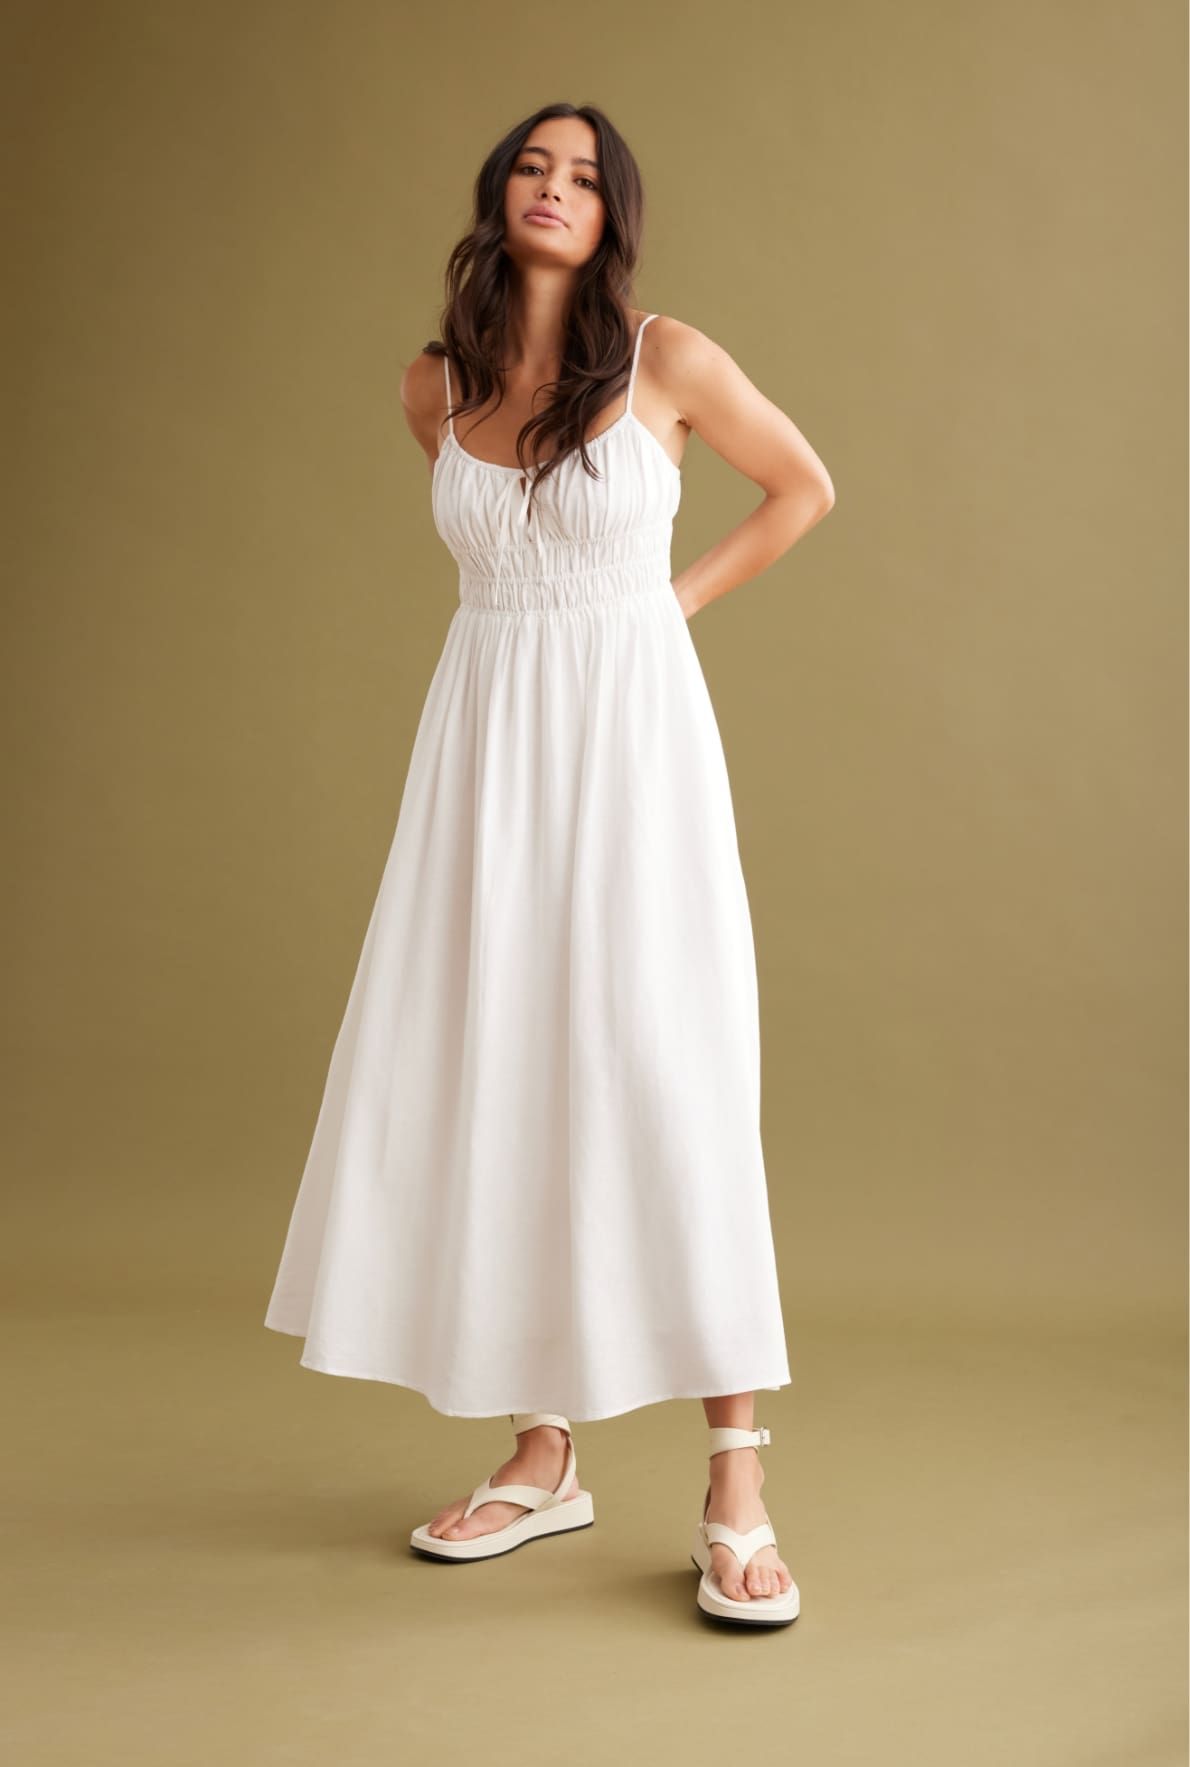 Une mannequin porte une robe maxi en lin blanc froncée au buste.